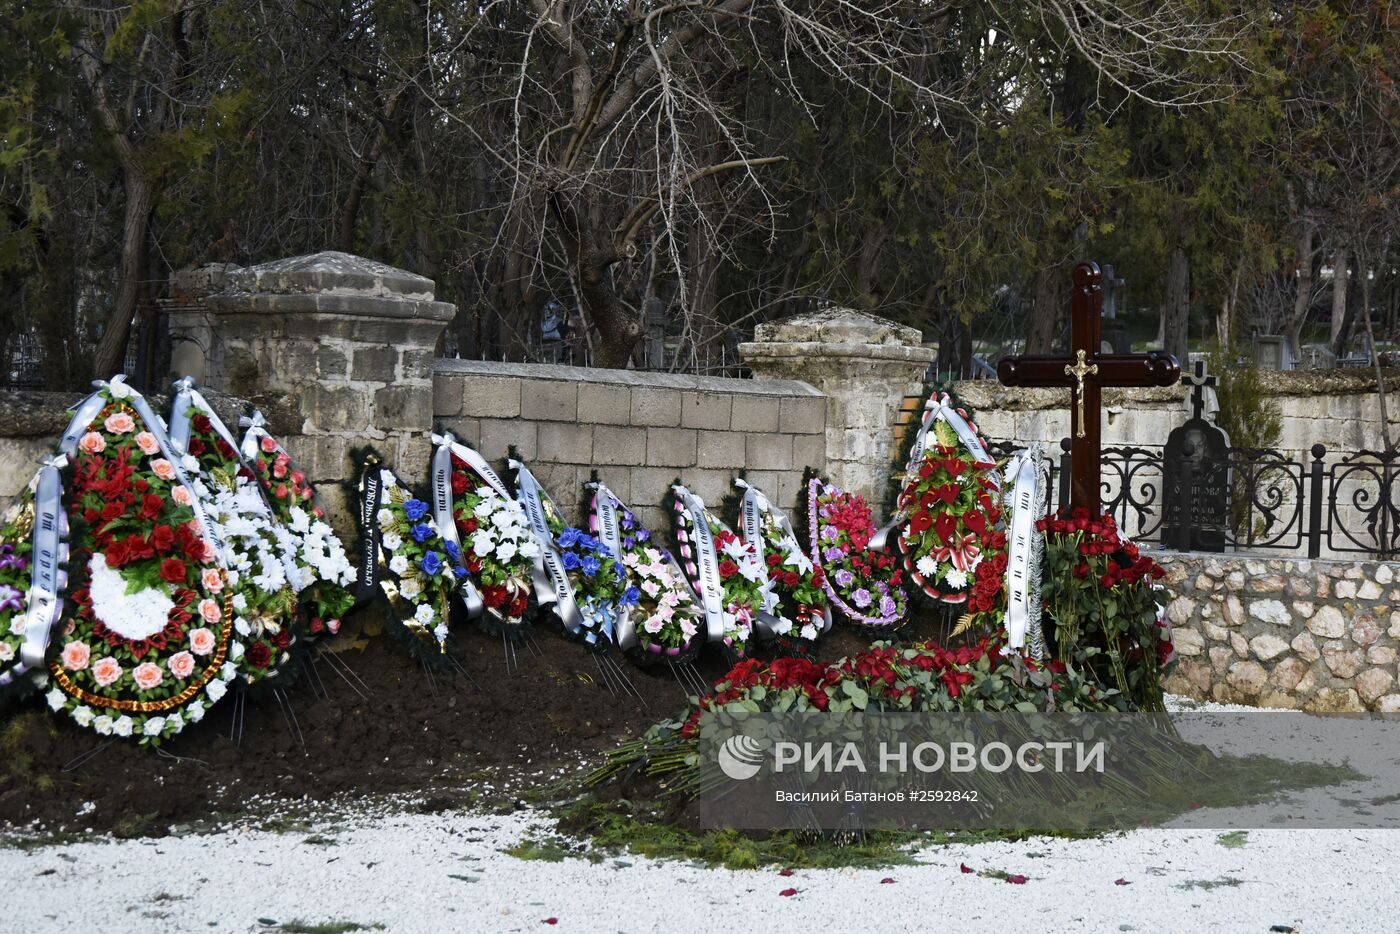 Предположительно могила сына Виктора Януковича на воинском кладбище в Севастополе